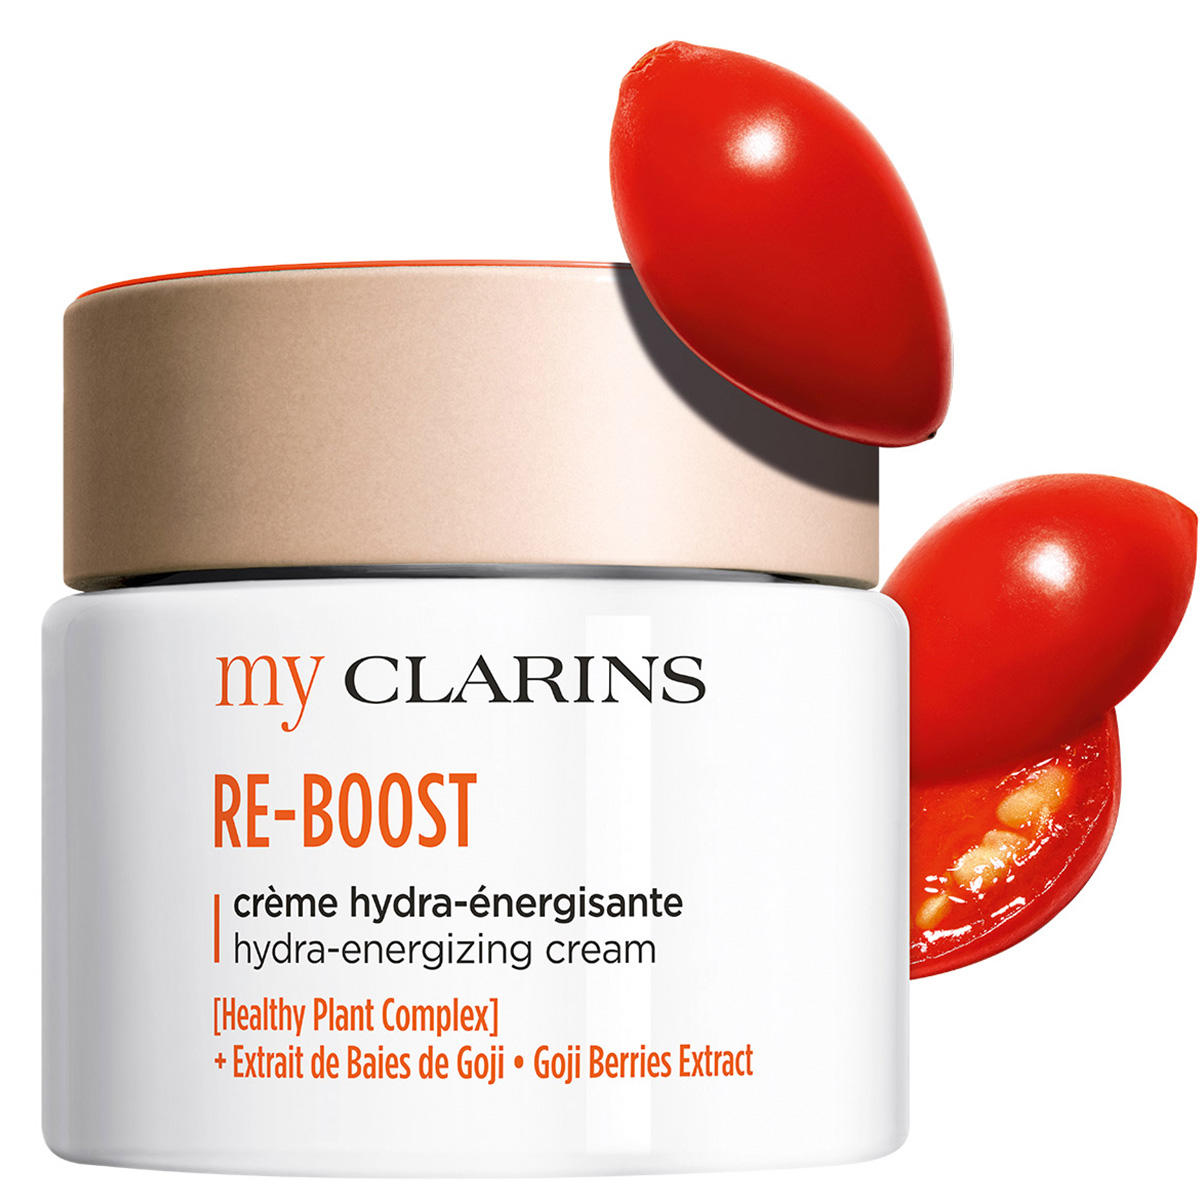 CLARINS myCLARINS Re-Boost Hydra-Energizing Cream 50 ml - 2